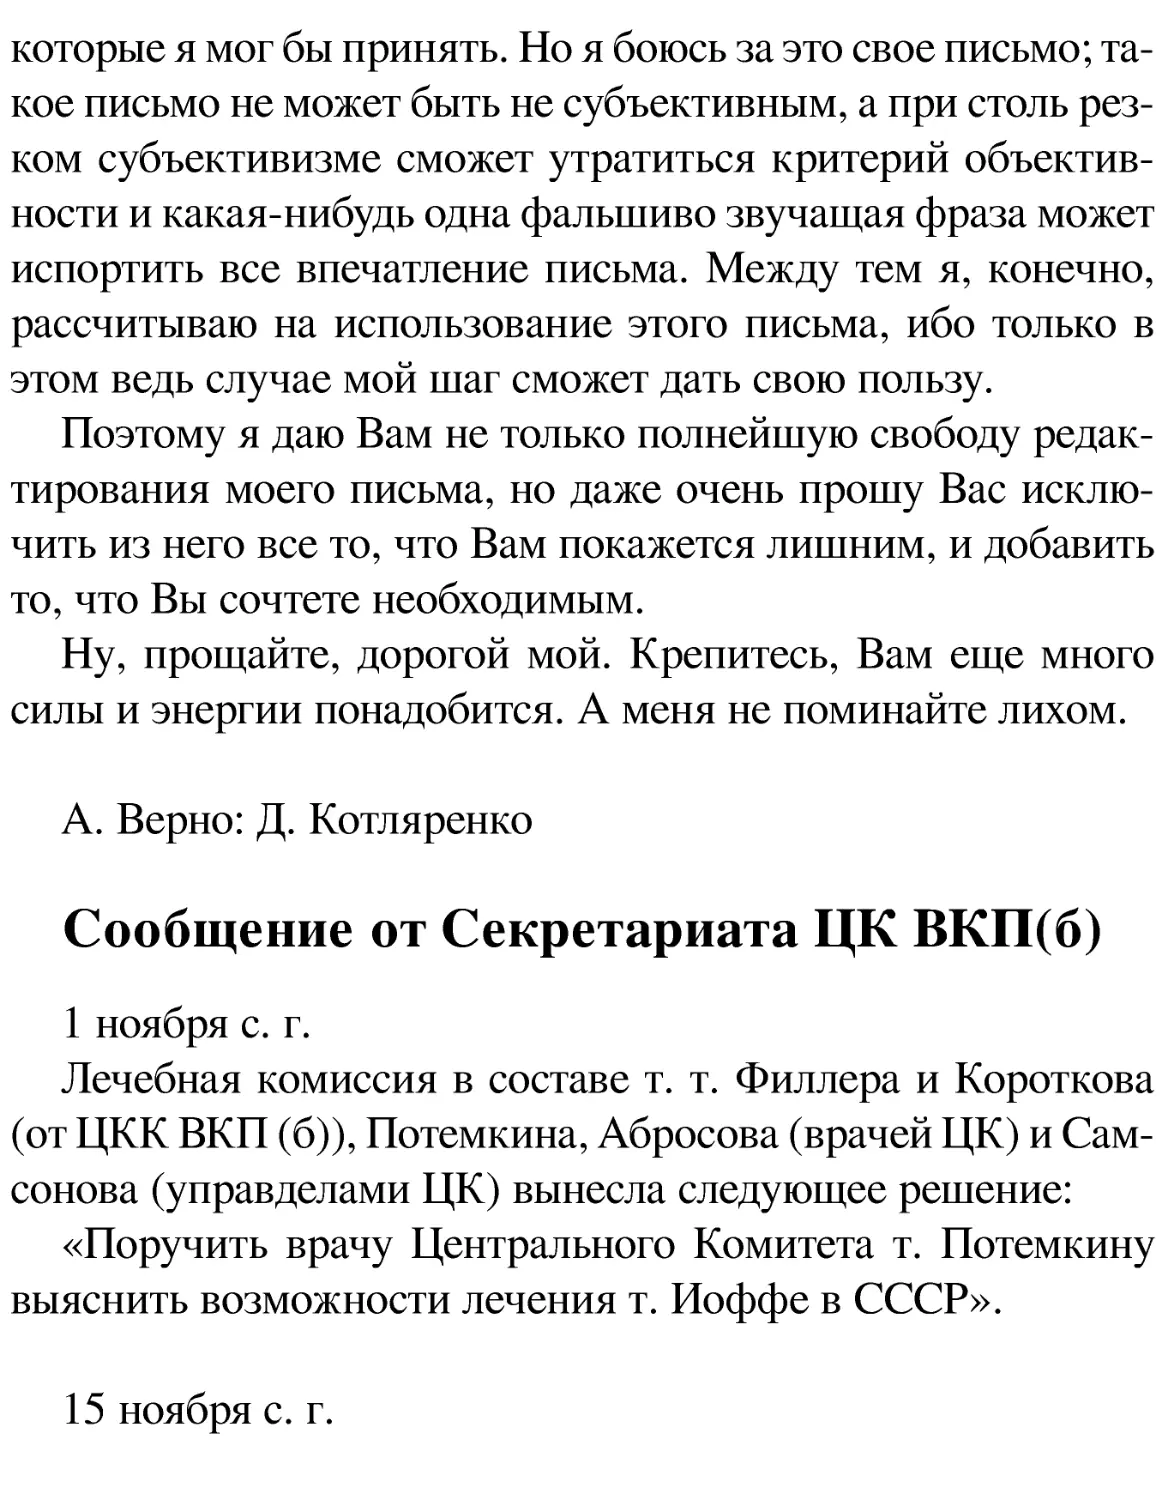 Сообщение от Секретариата ЦК ВКП(б)